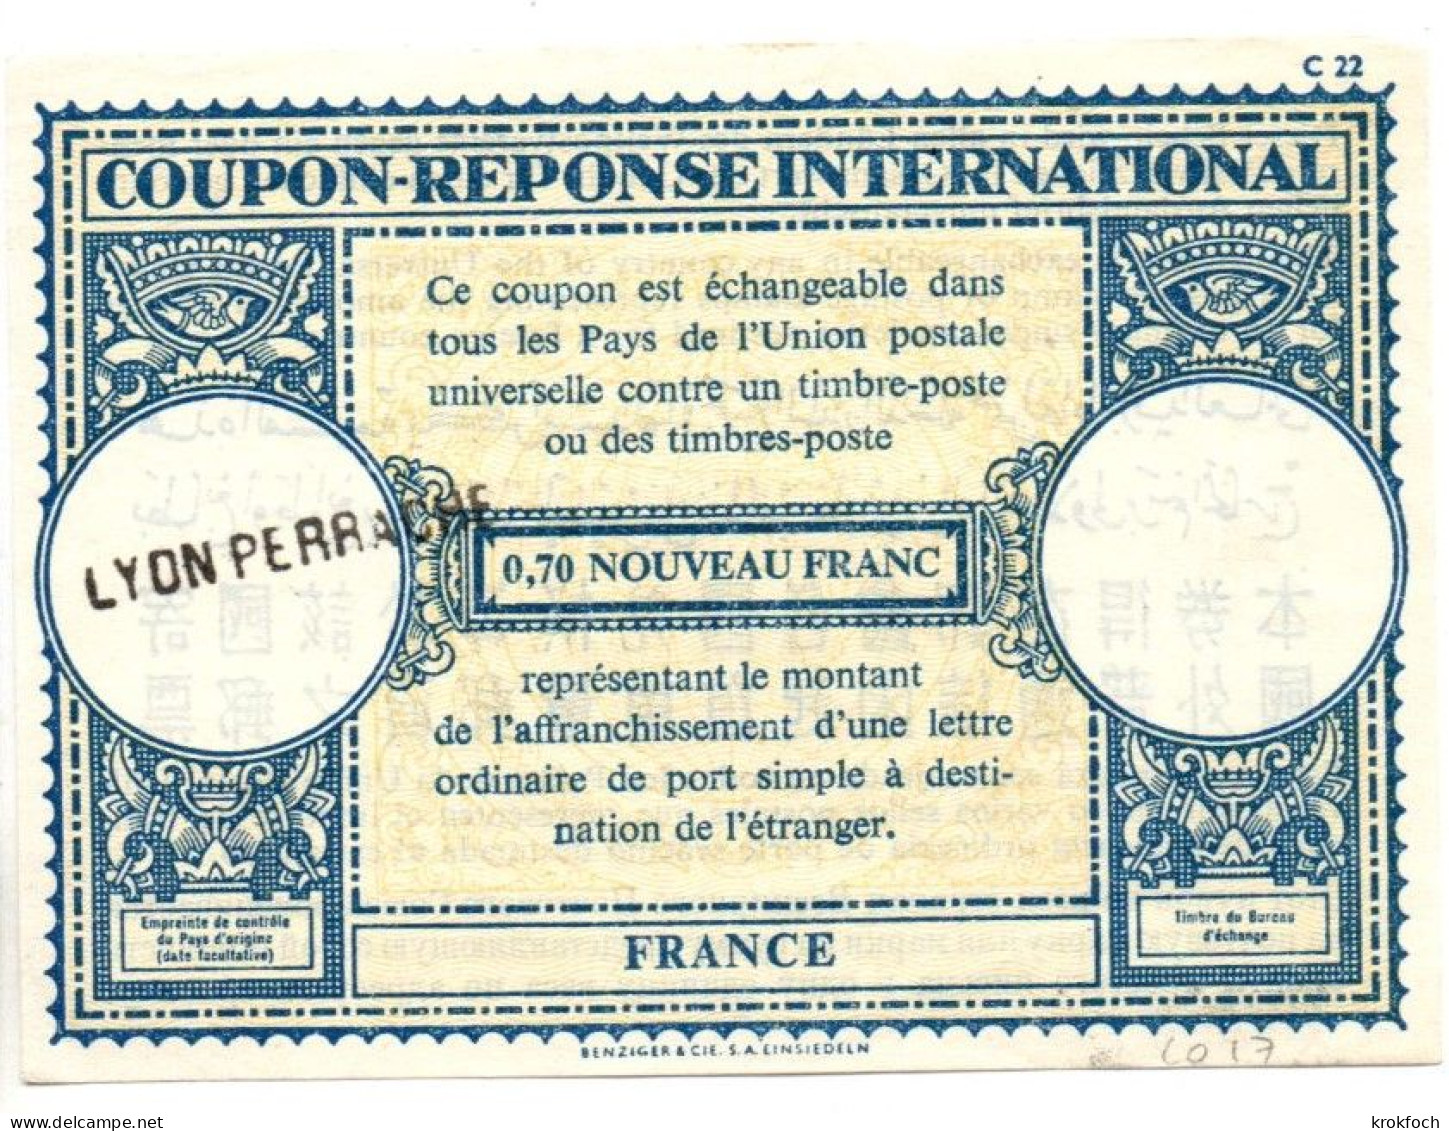 CR France Type Londres L0 17 - 0,70 Nouveau Franc - Griffe Lyon Perrache - CRI IRC - Antwoordbons